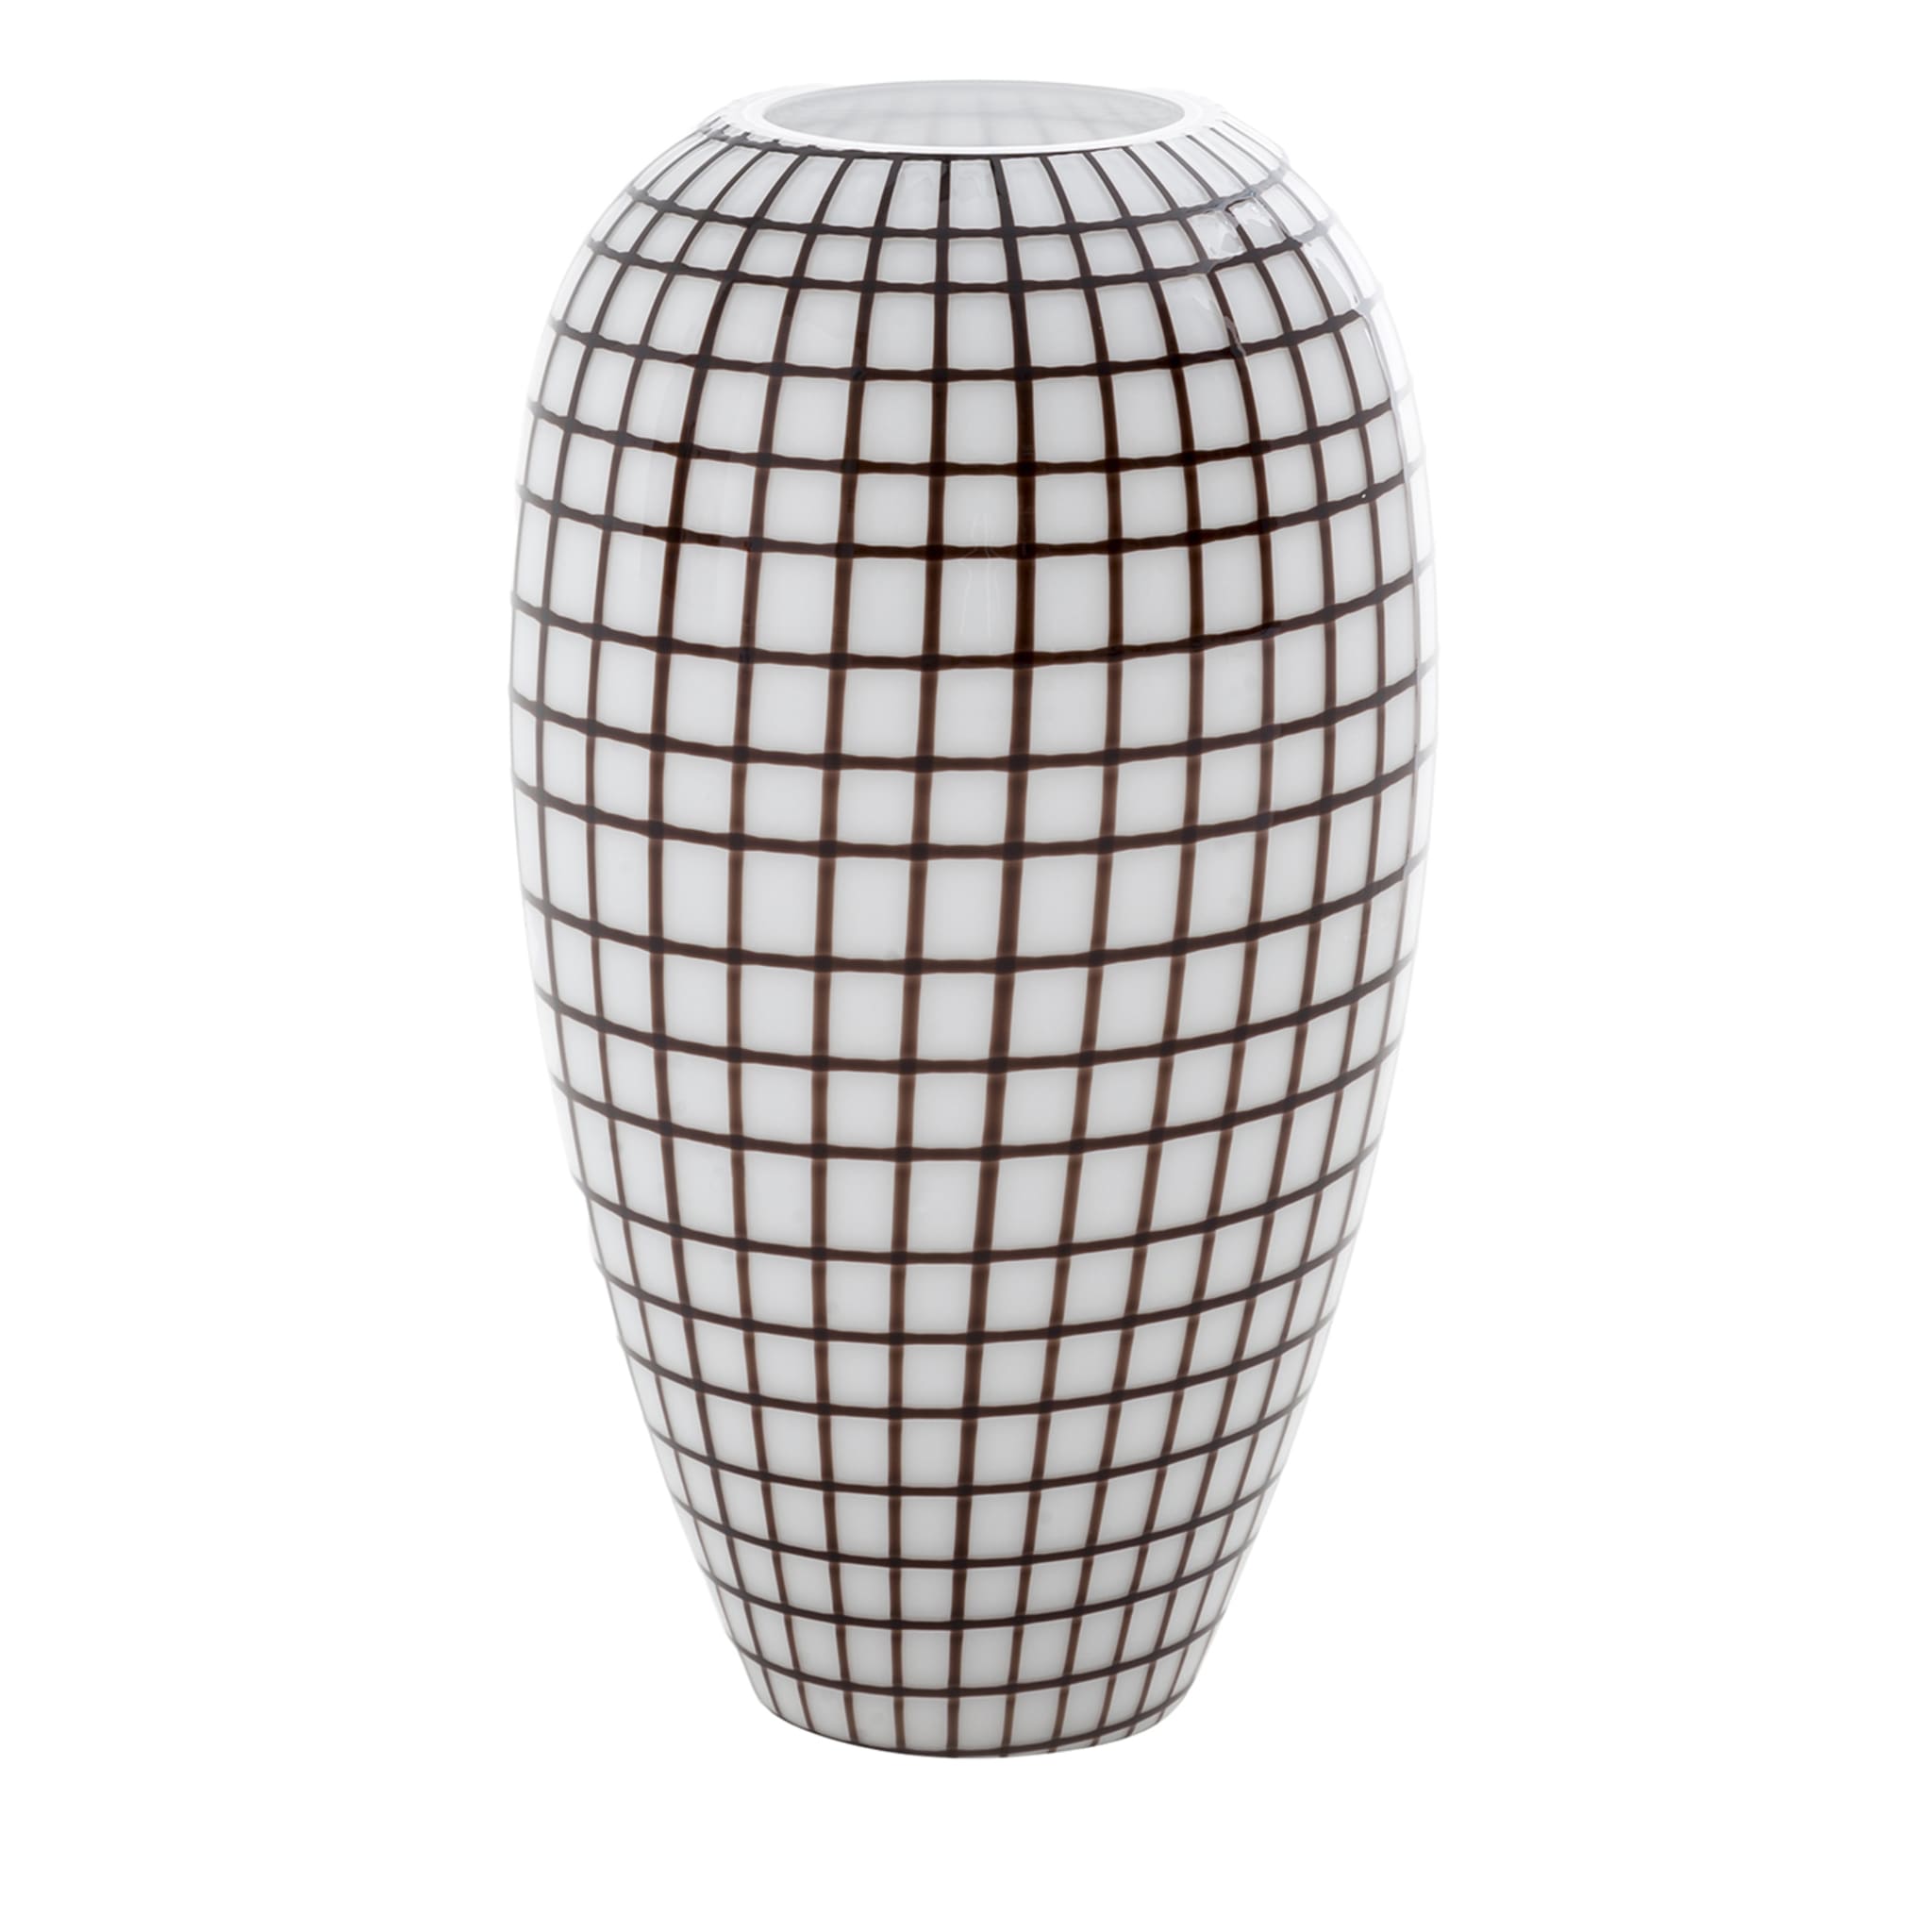 Schwarz-weiße Vase mit Gitter - Hauptansicht